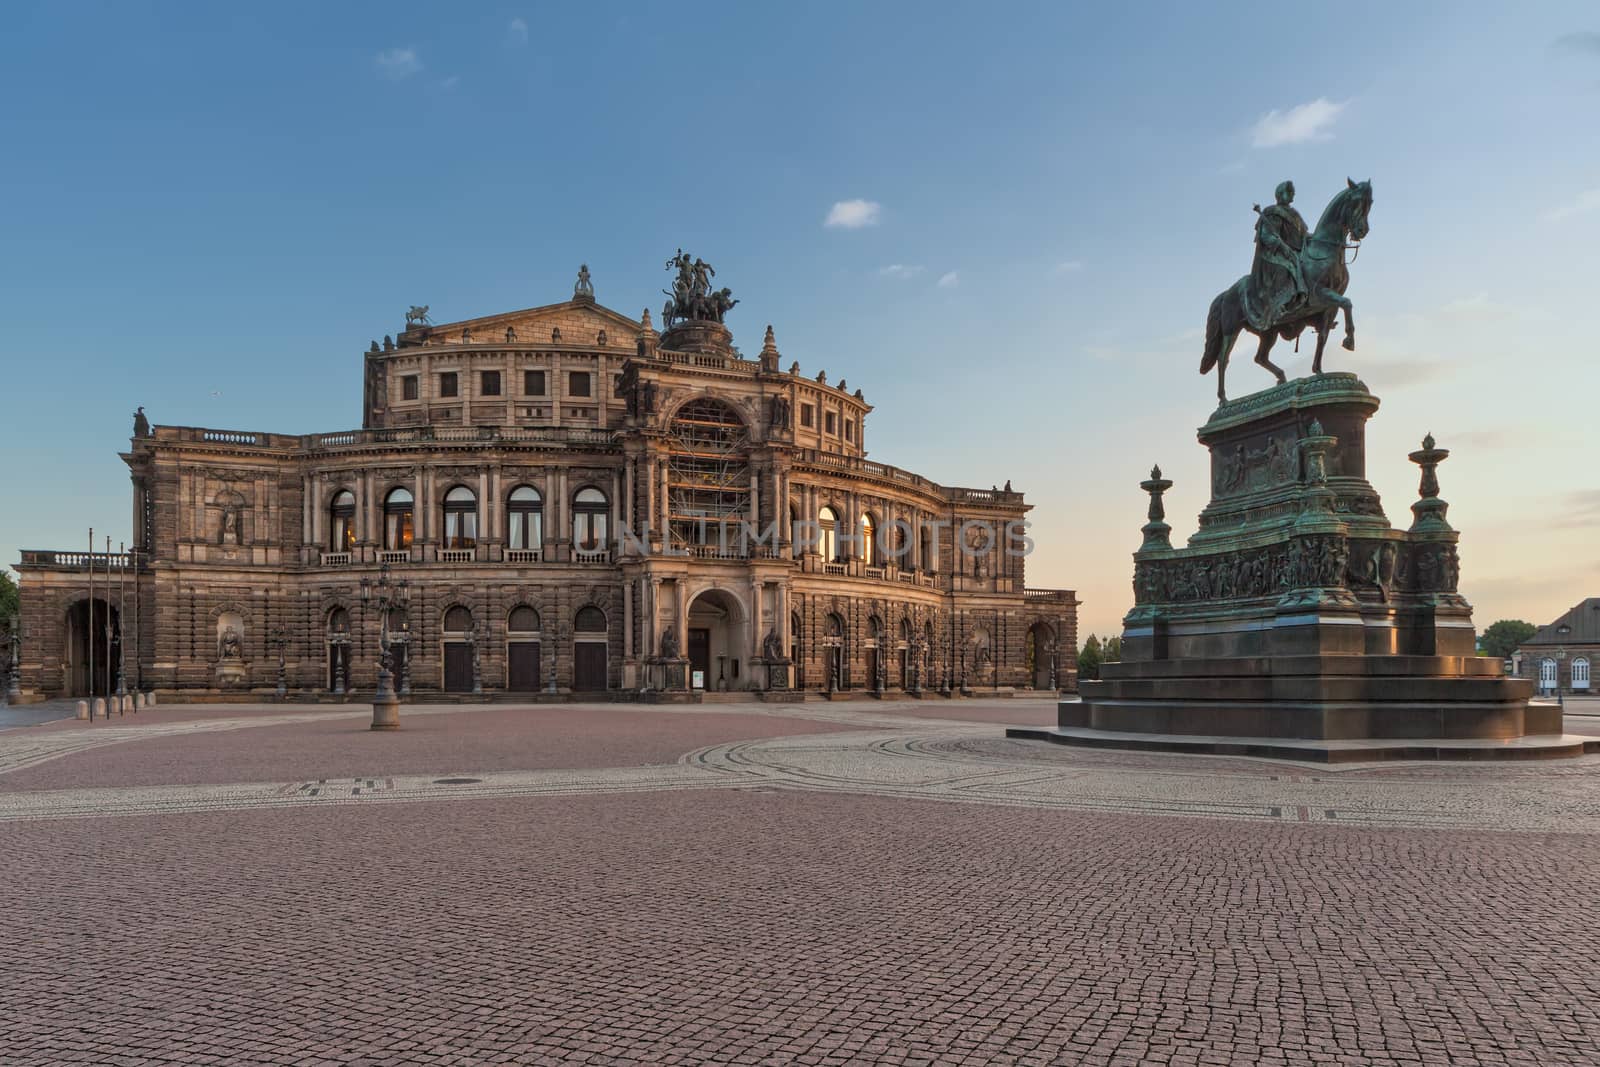 The Semper Opera House in Dresden by mot1963